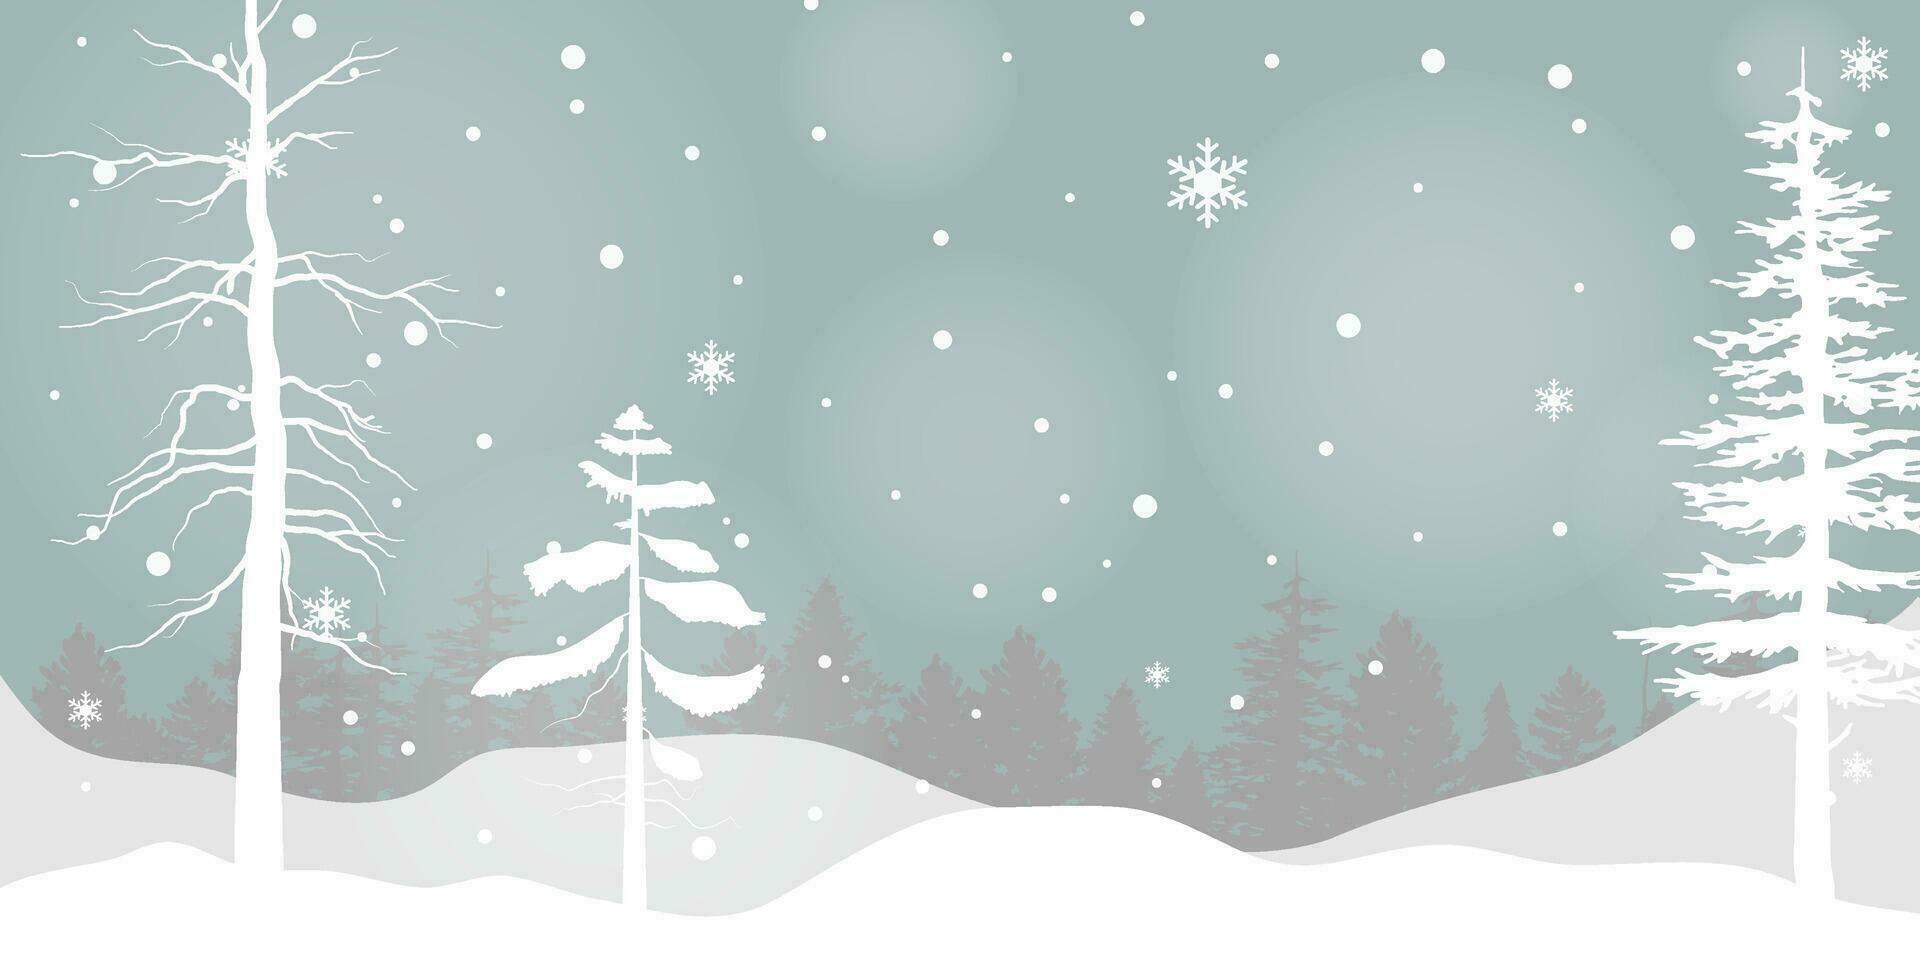 Preto e branco árvore floresta fundo e nevando para inverno estação conceito. mão desenhado isolado ilustrações. vetor